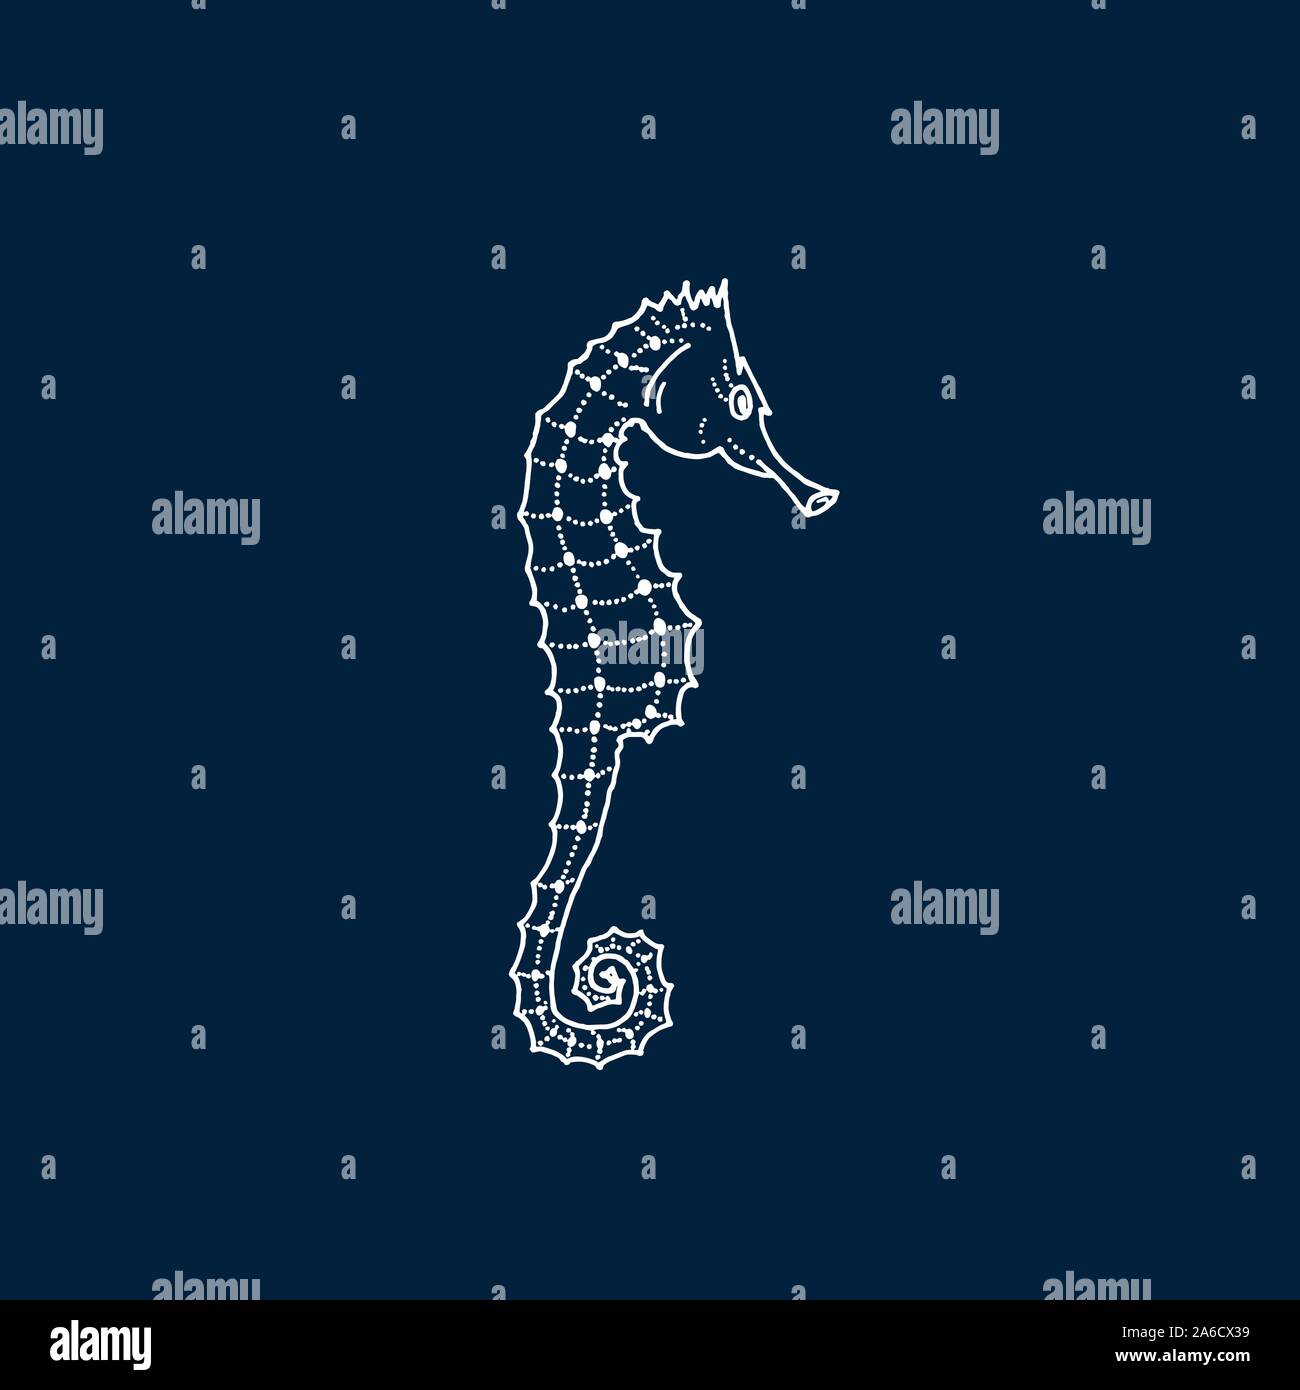 Vector illustration of white seahorse silhouette sur fond bleu foncé. Dessin à la main seahorse Illustration de Vecteur